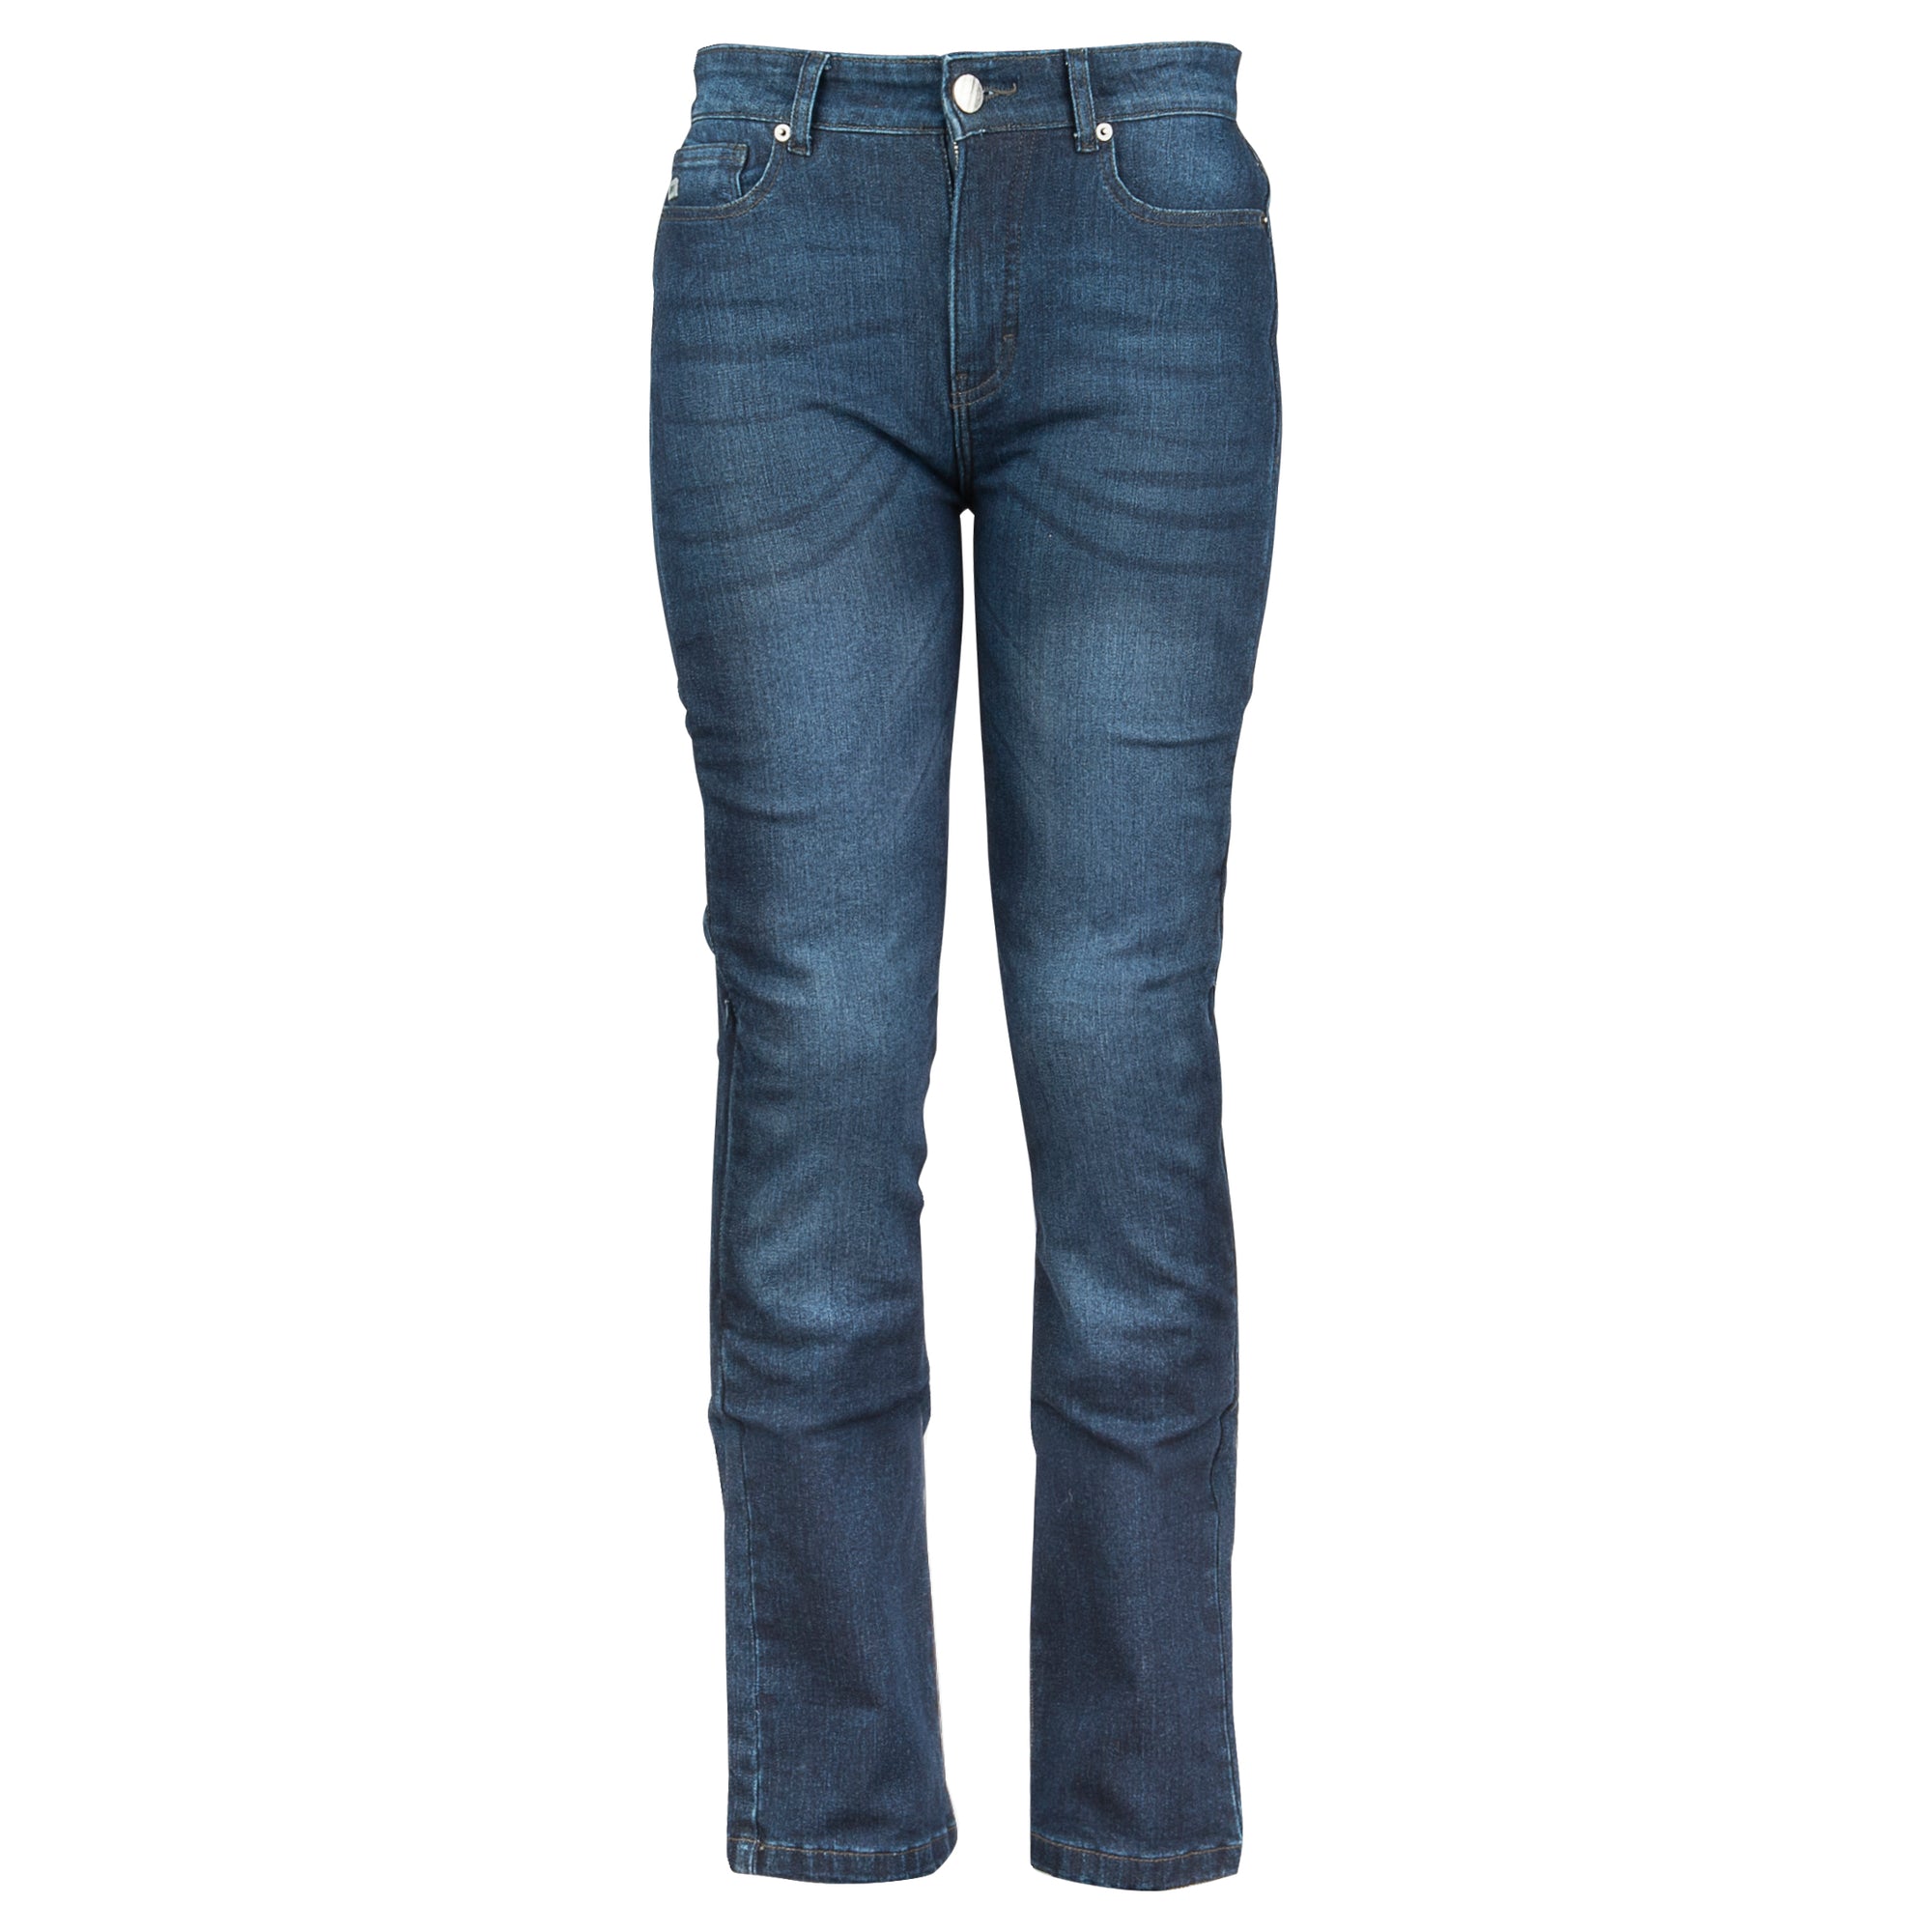 Womens Duty Pants - Women's Side-Pocket Rayon Pants - 8980W - Blauer